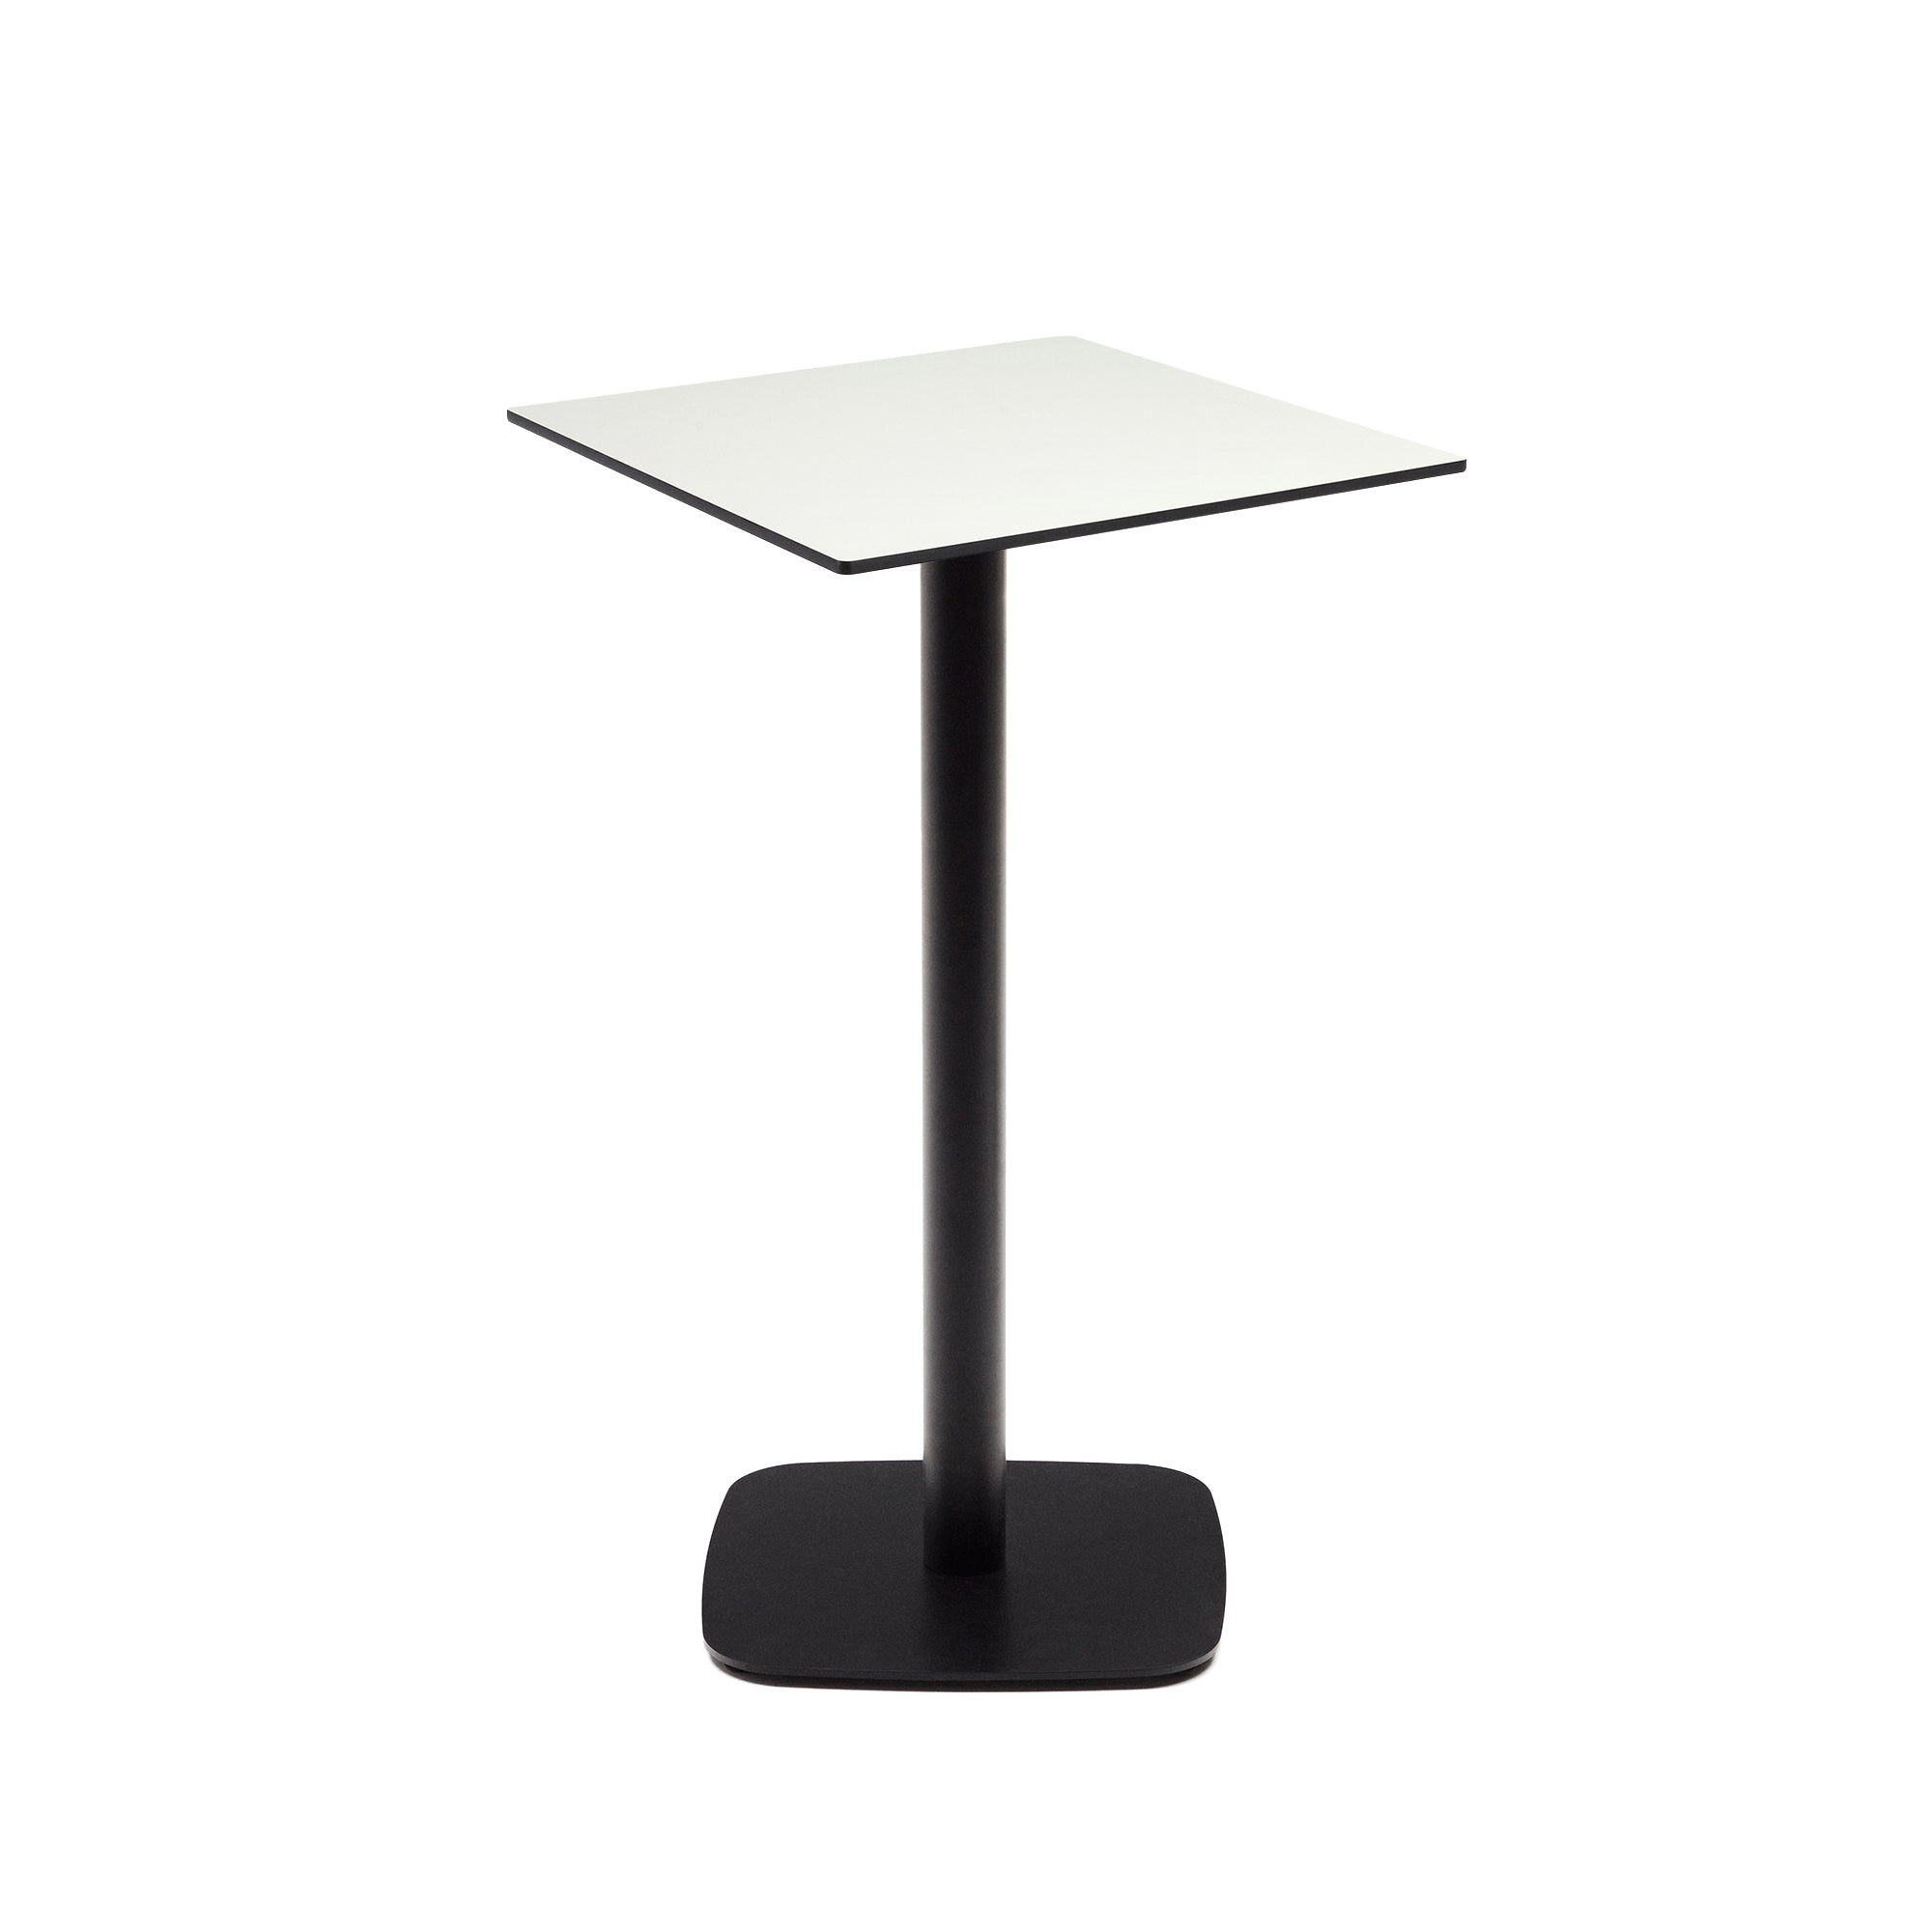 Dina magas kültéri asztal fehér színben, fekete festett fémlábbal, 60x60x96 cm, 60x60x96 cm